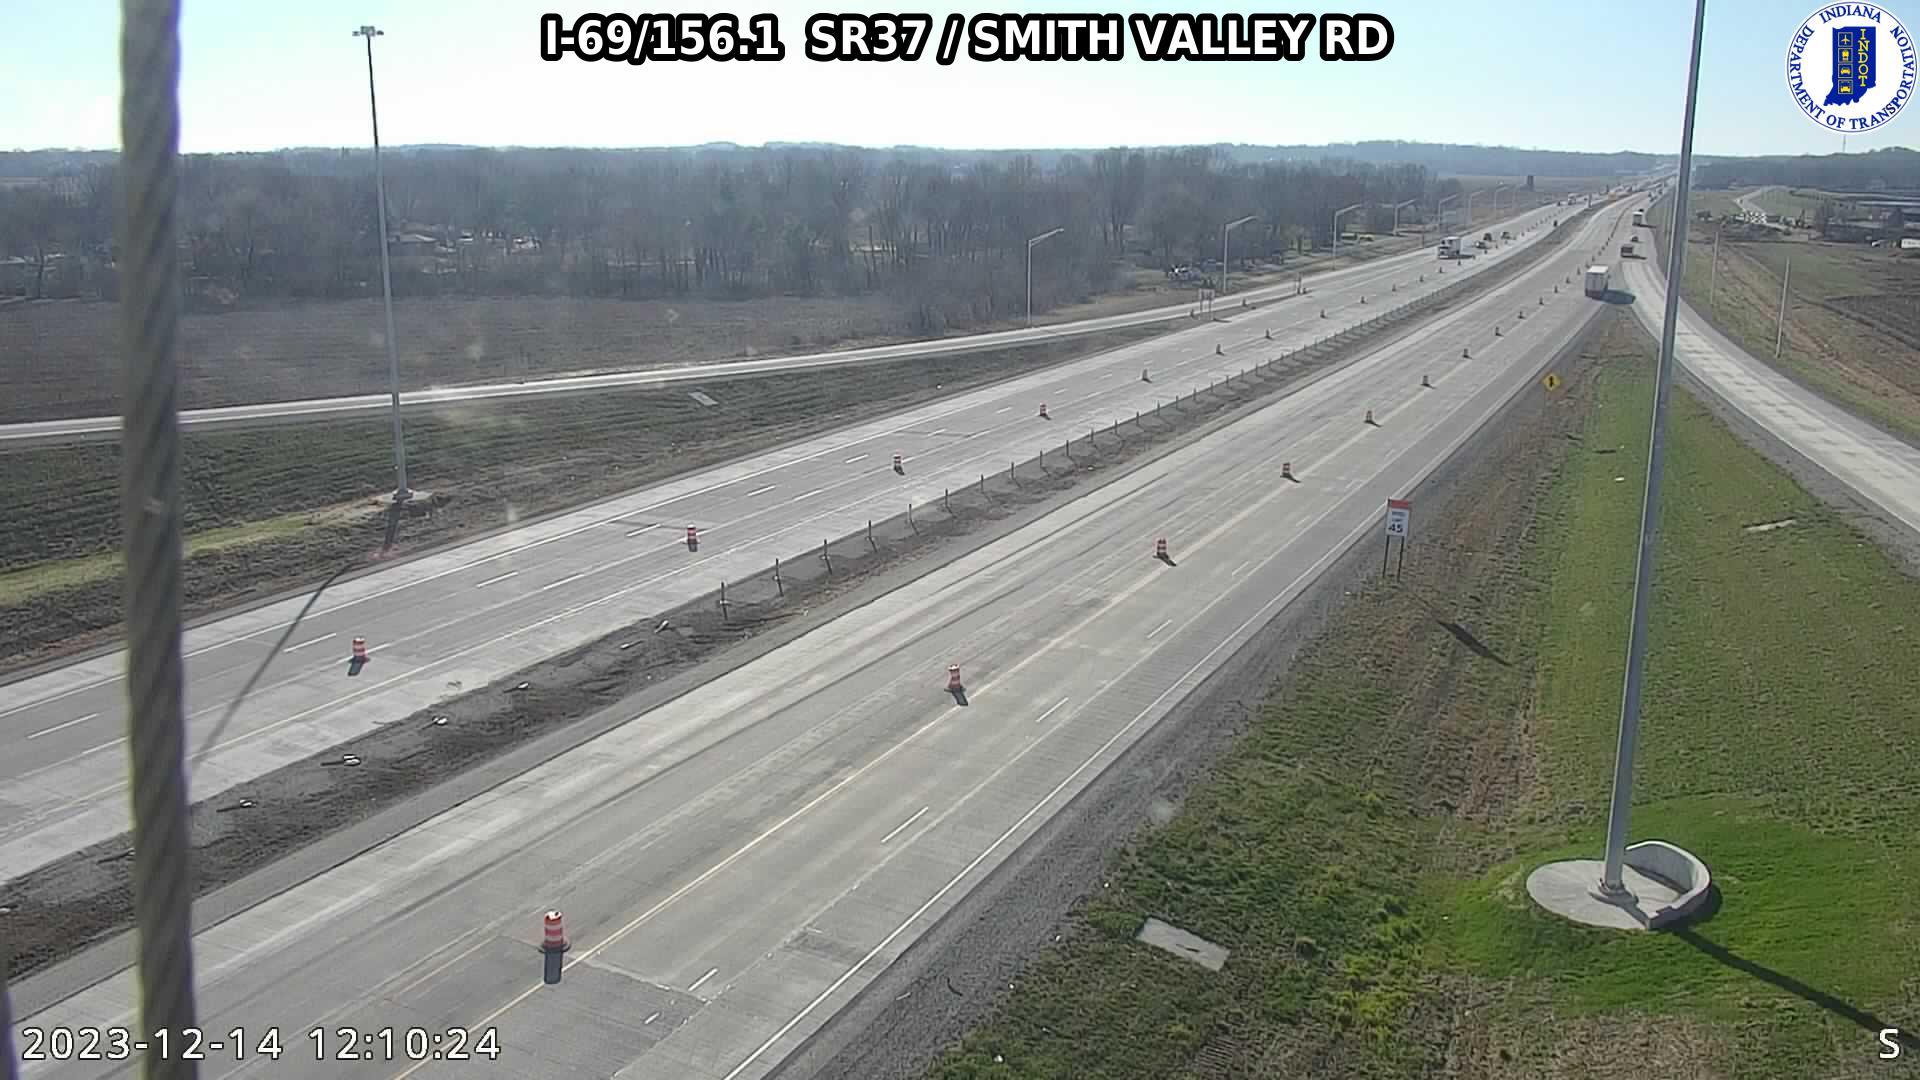 Smith Valley: I-69: I-69/156.1 SR37 - RD: I-69/156.1 SR37 - RD Traffic Camera